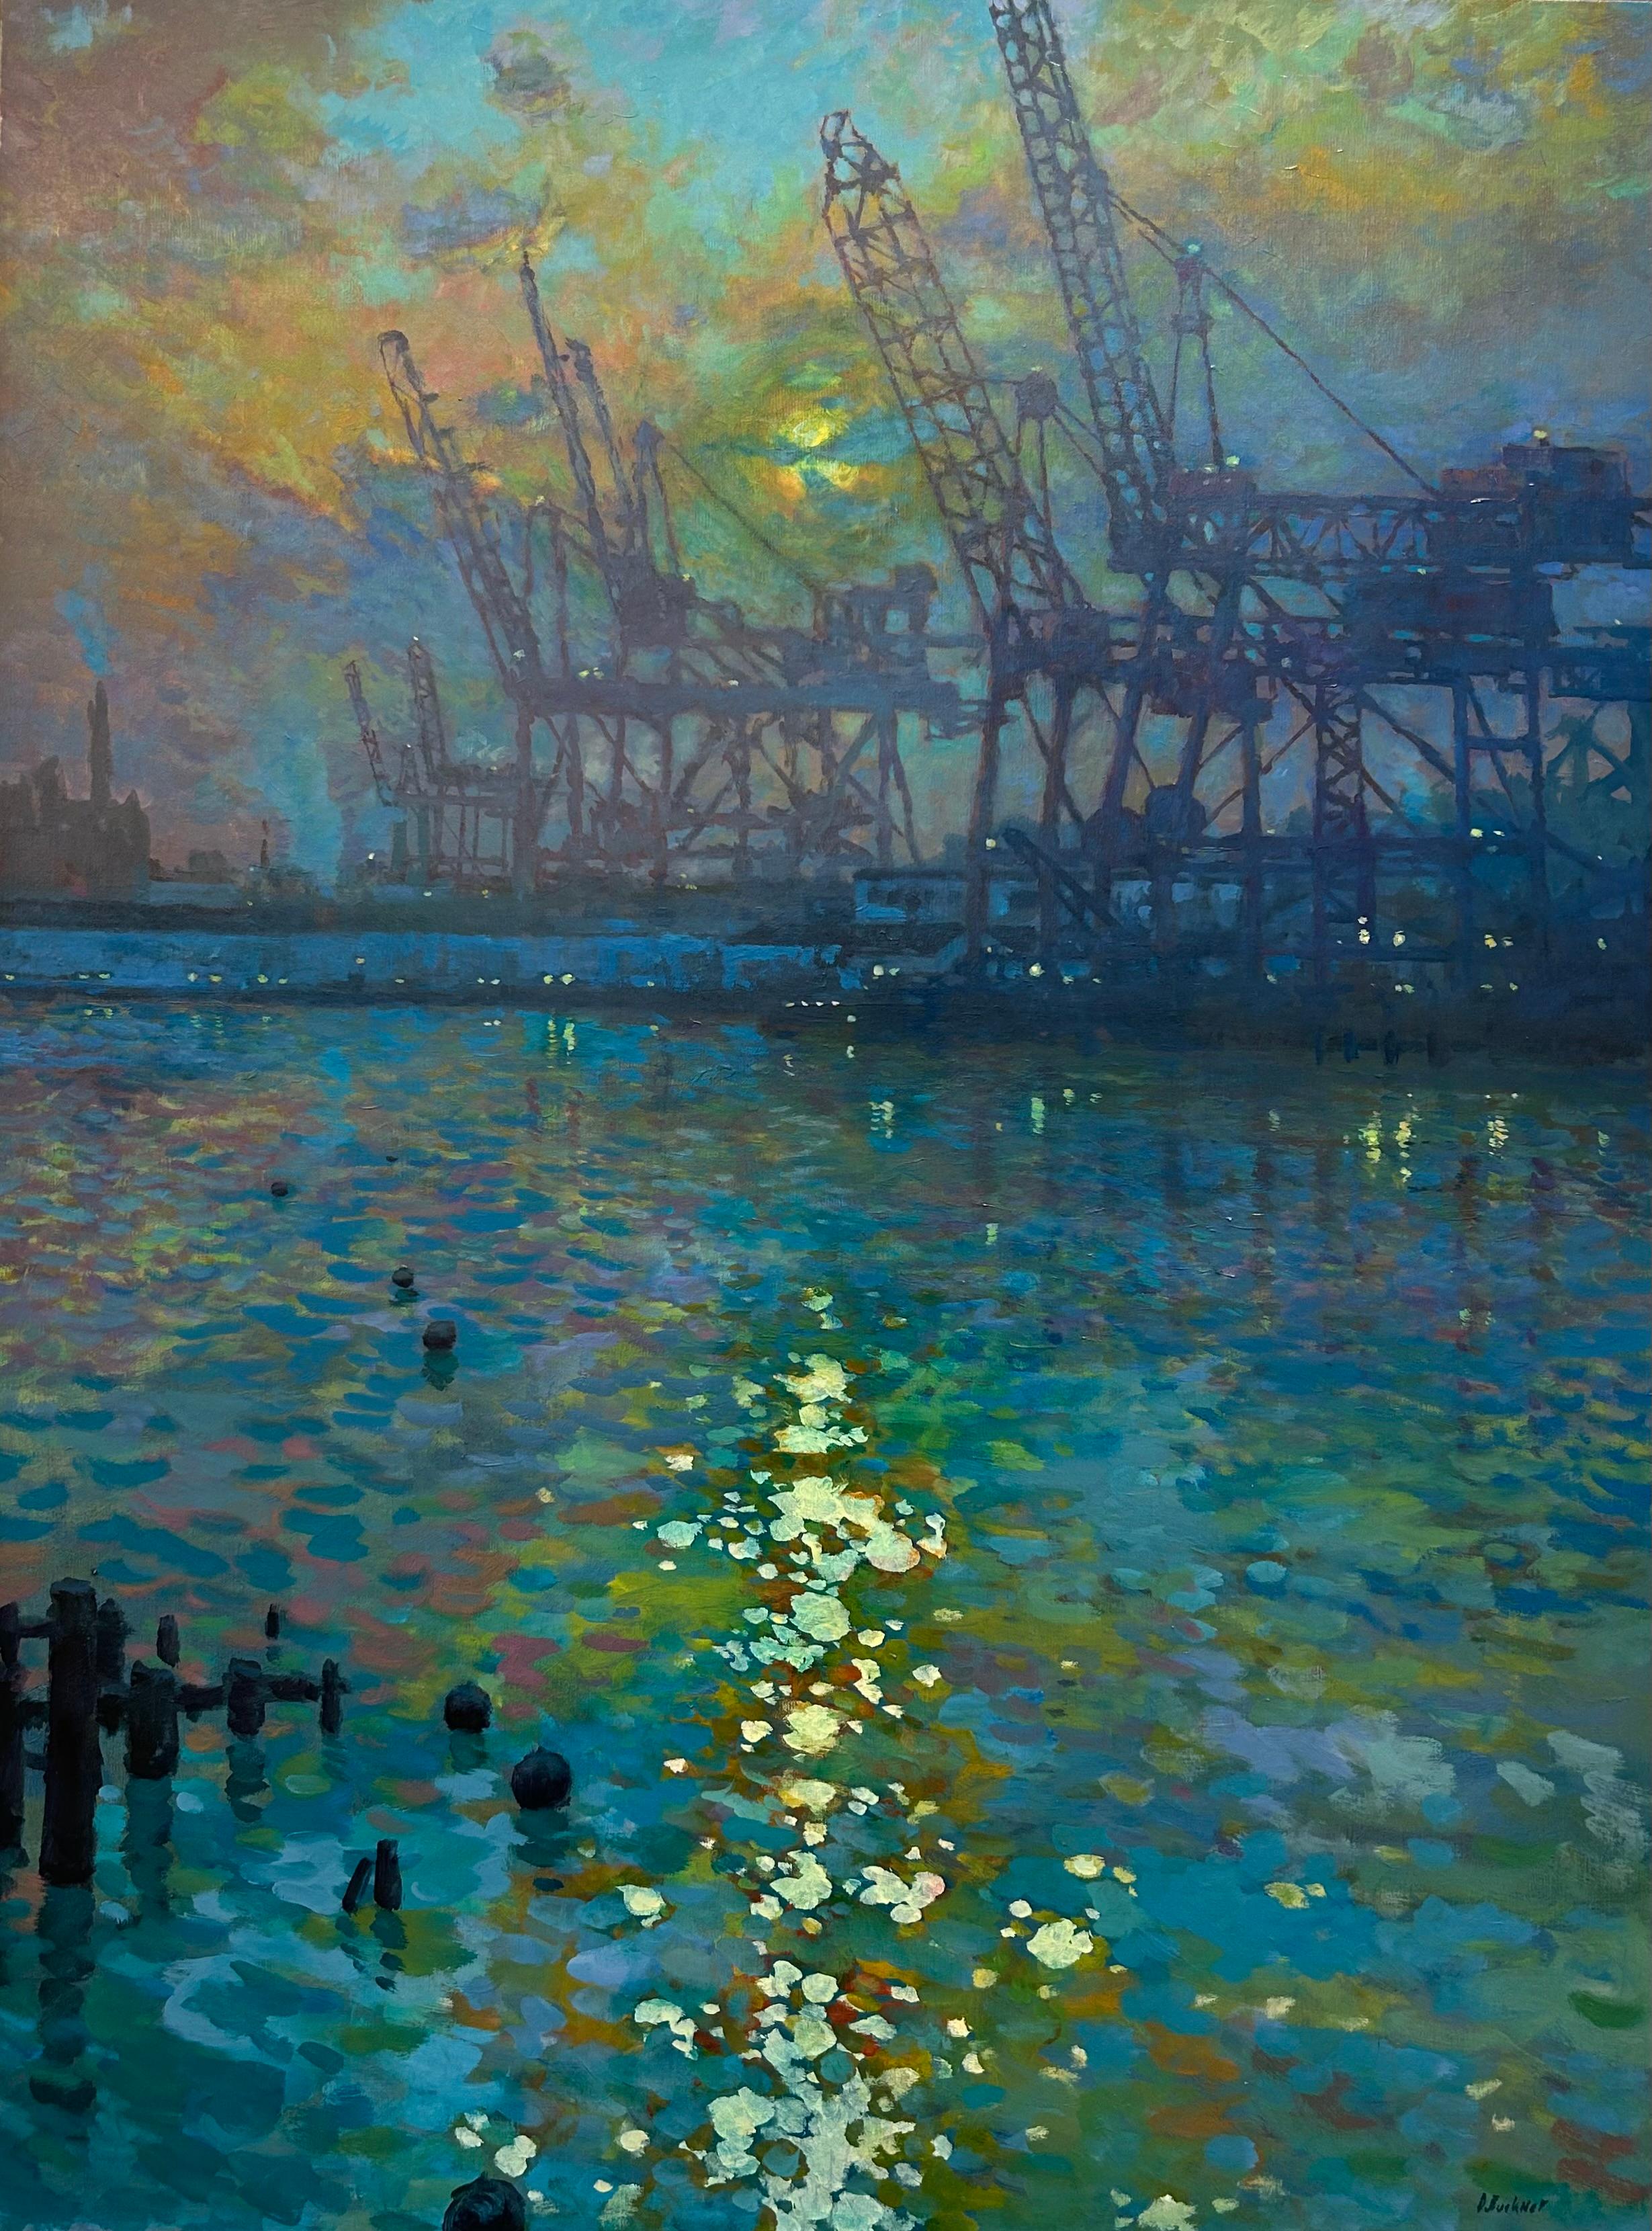 Port Cranes, Sonnenlicht auf Wasser – Painting von Derek Buckner